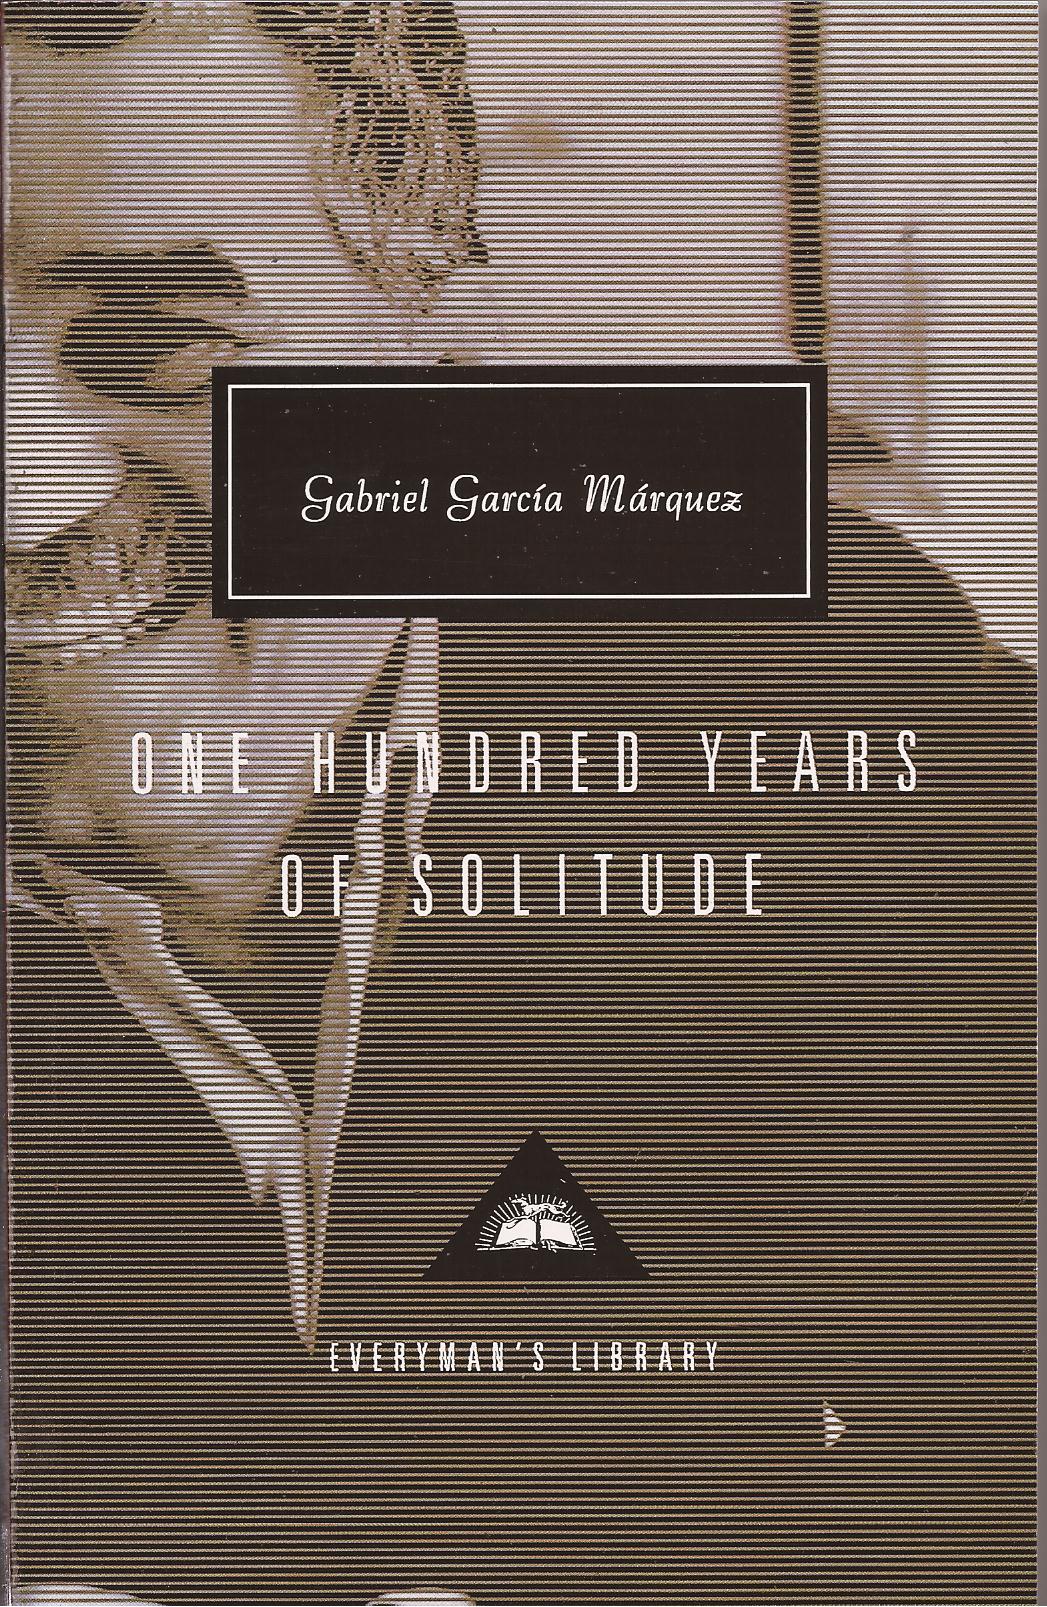 ლიტერატურა ინგლისურ ენაზე - Marquez Gabriel Garcia - One Hundred Years of Solitude